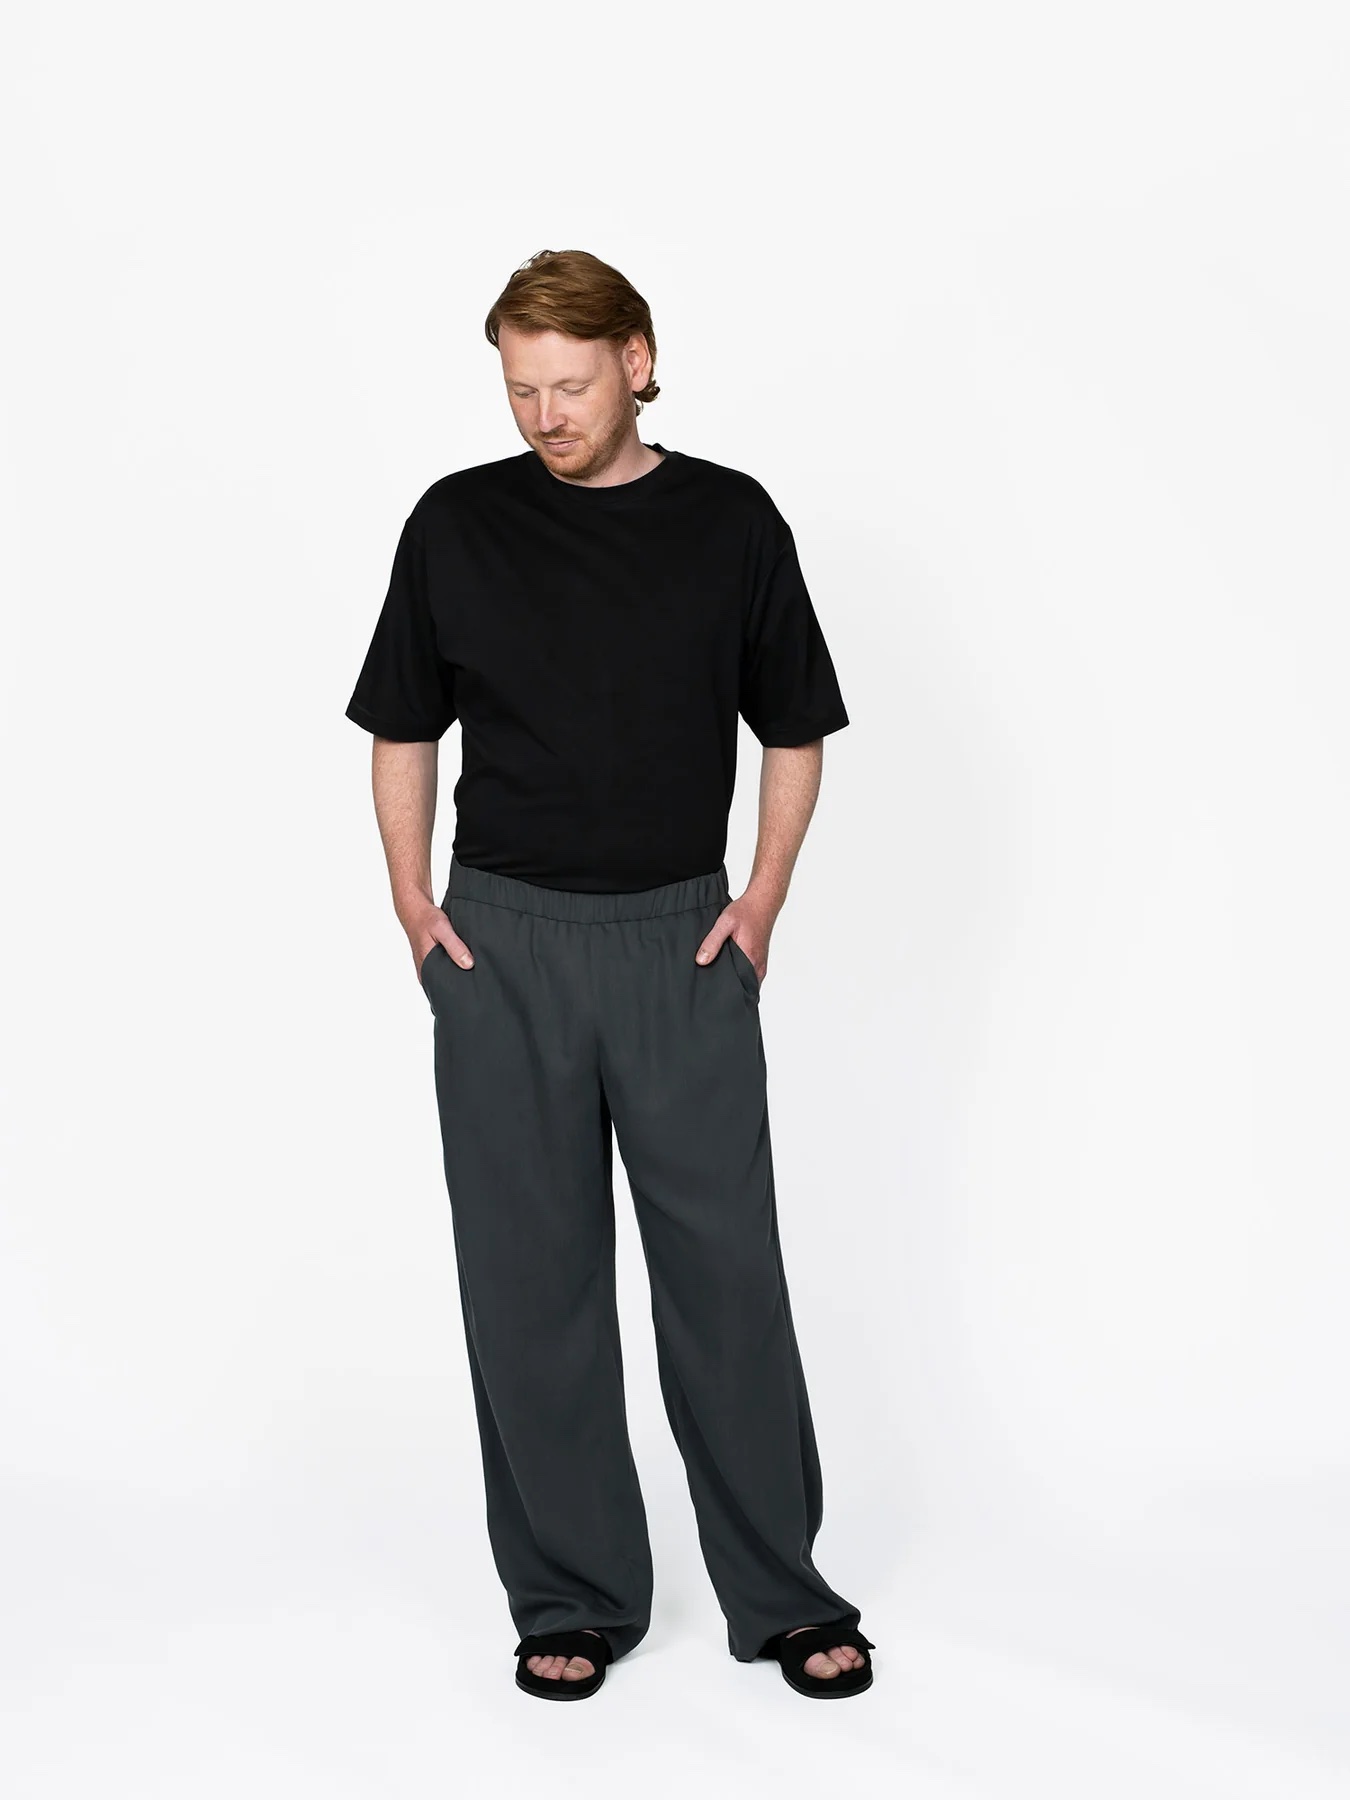 Buy Highlander Oil Blue Jogger Slim Fit Trouser for Men Online at Rs.588 -  Ketch